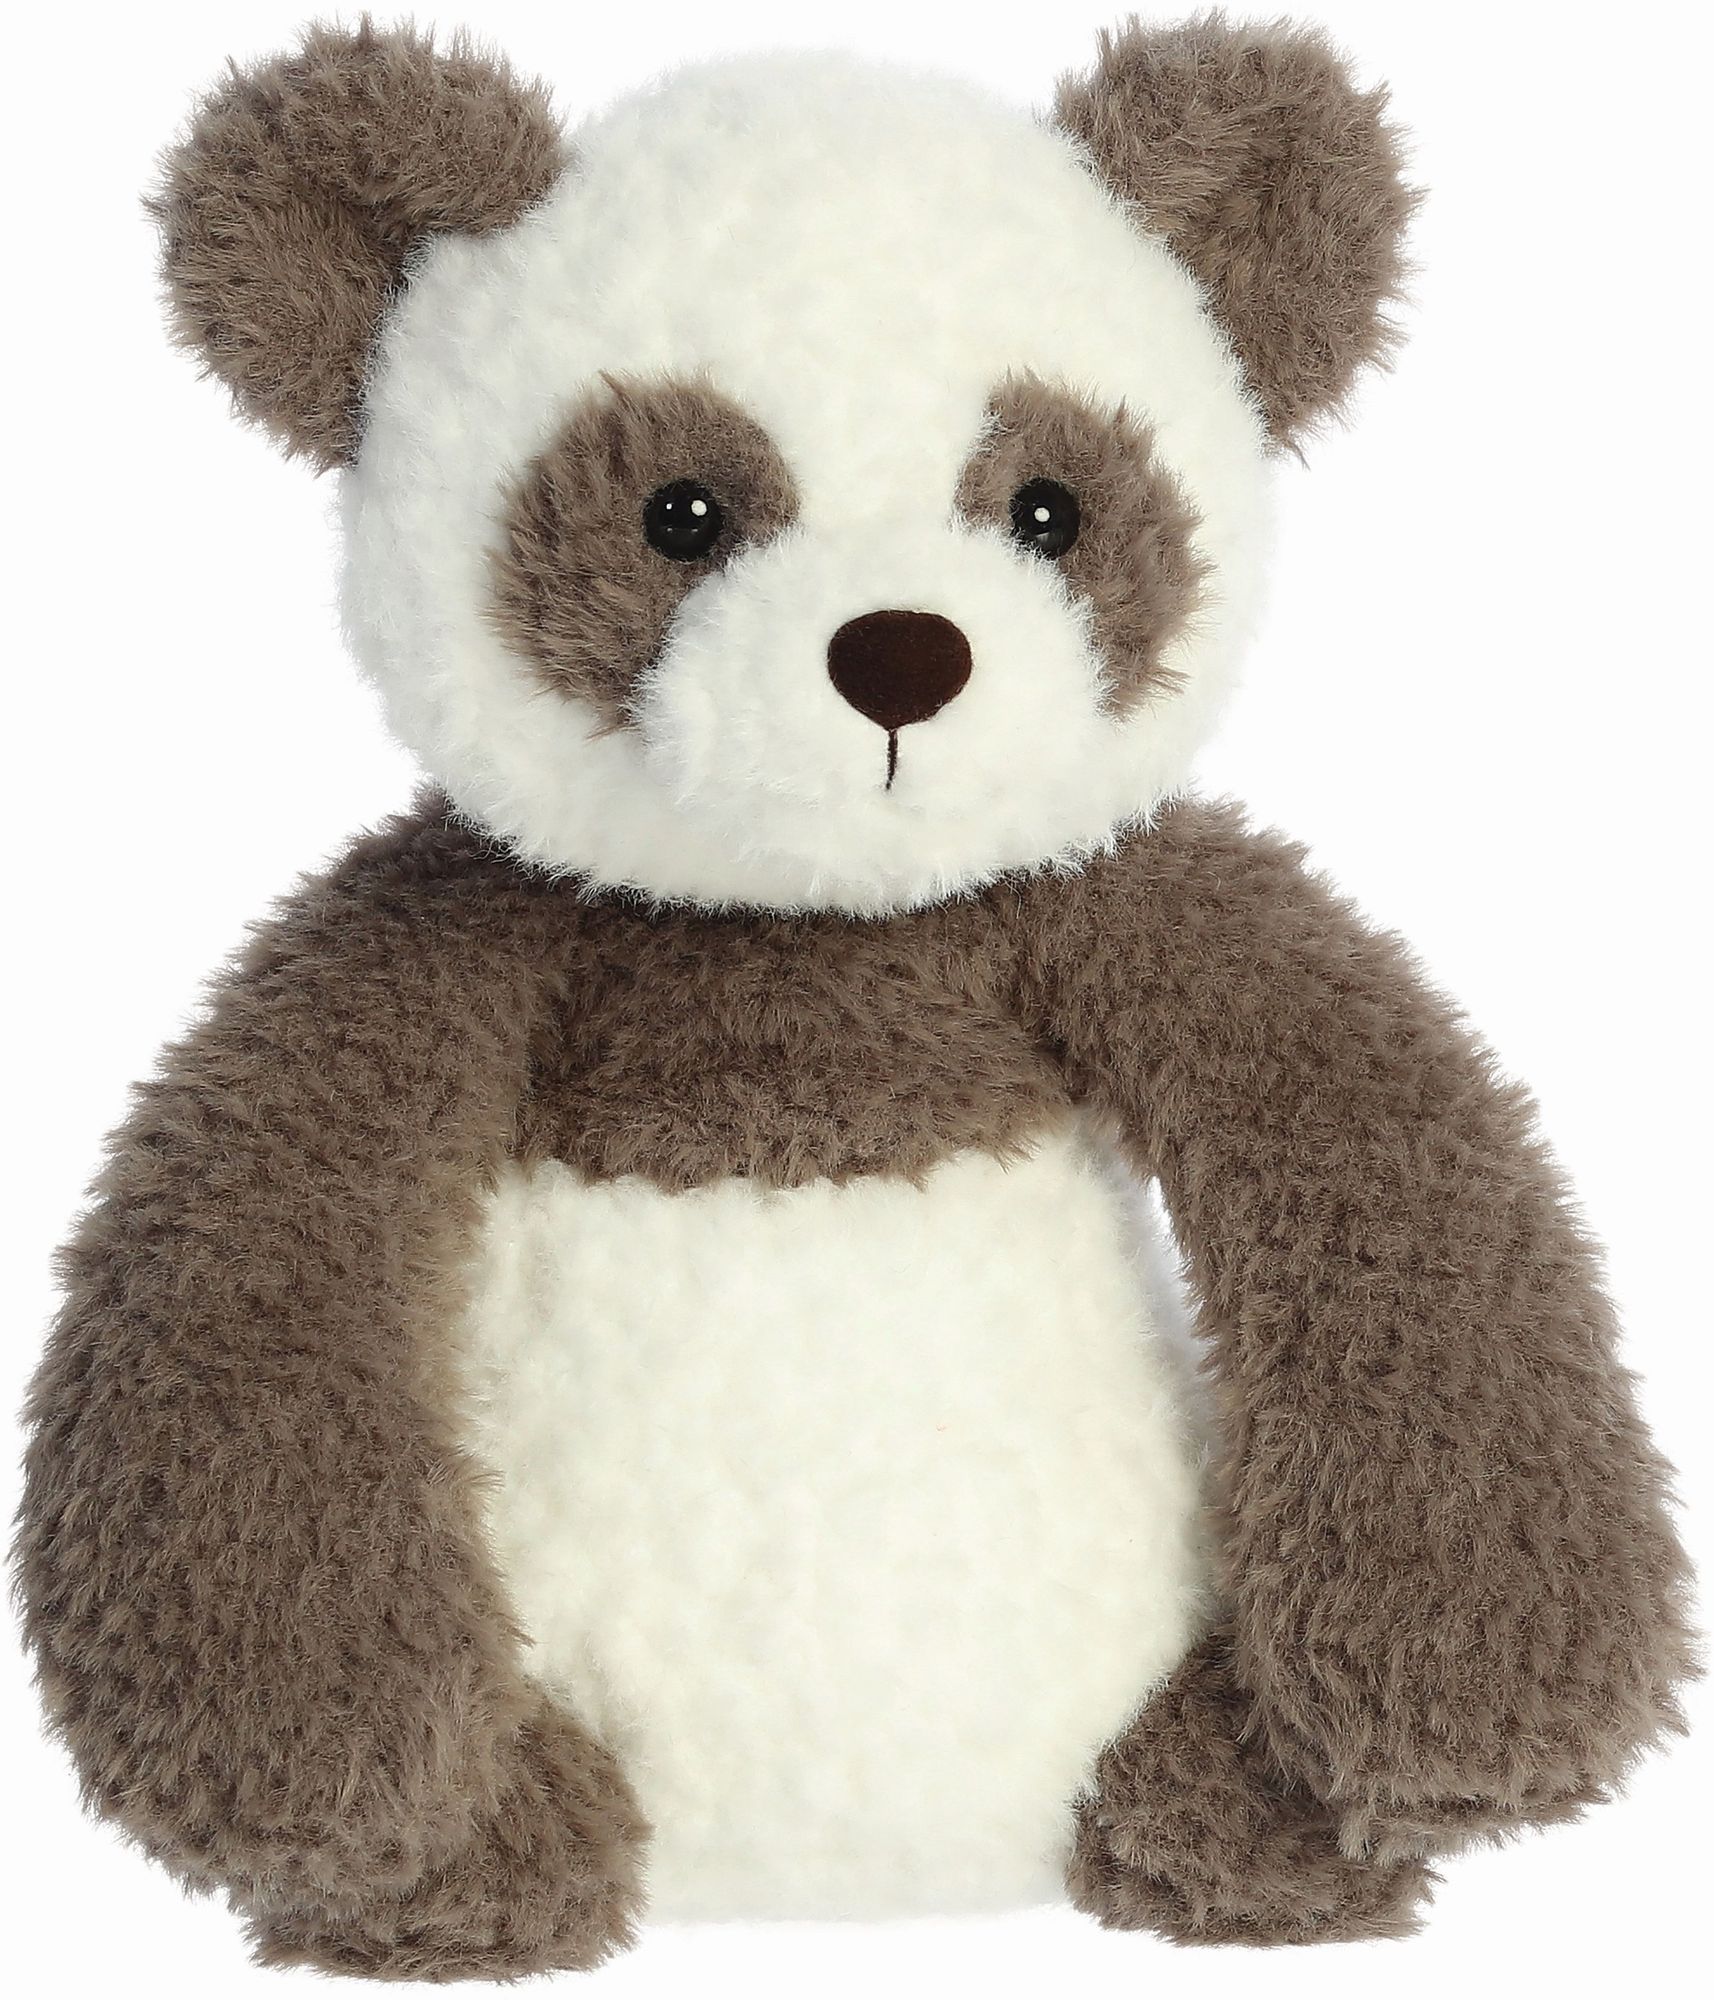 Aurora 33701 - Panda, Plüschtier, 27 cm' kaufen - Spielwaren